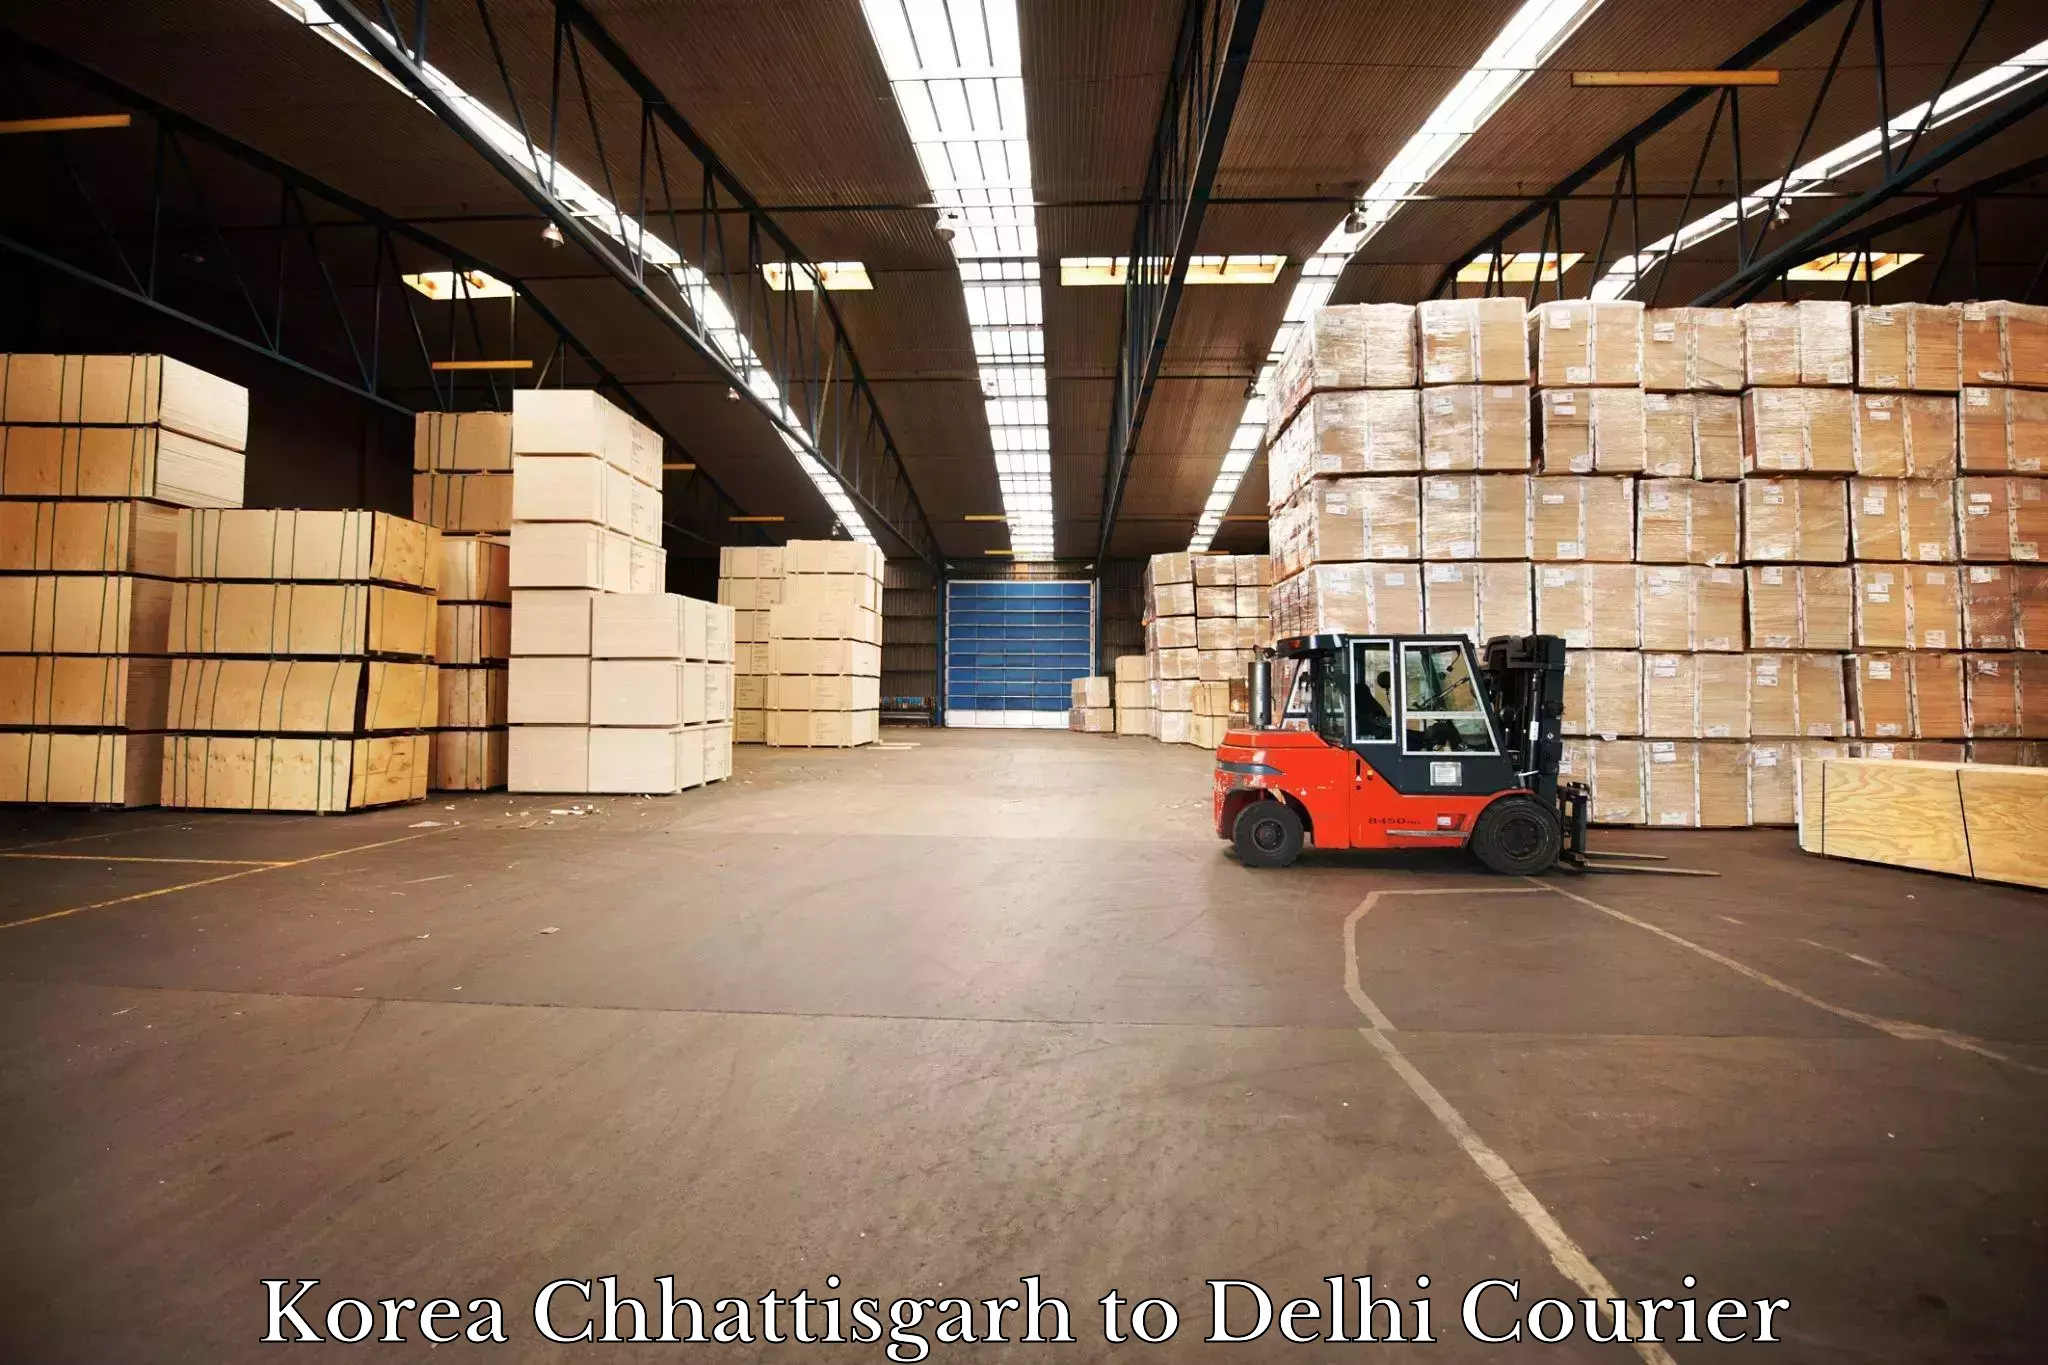 On-call courier service Korea Chhattisgarh to NIT Delhi